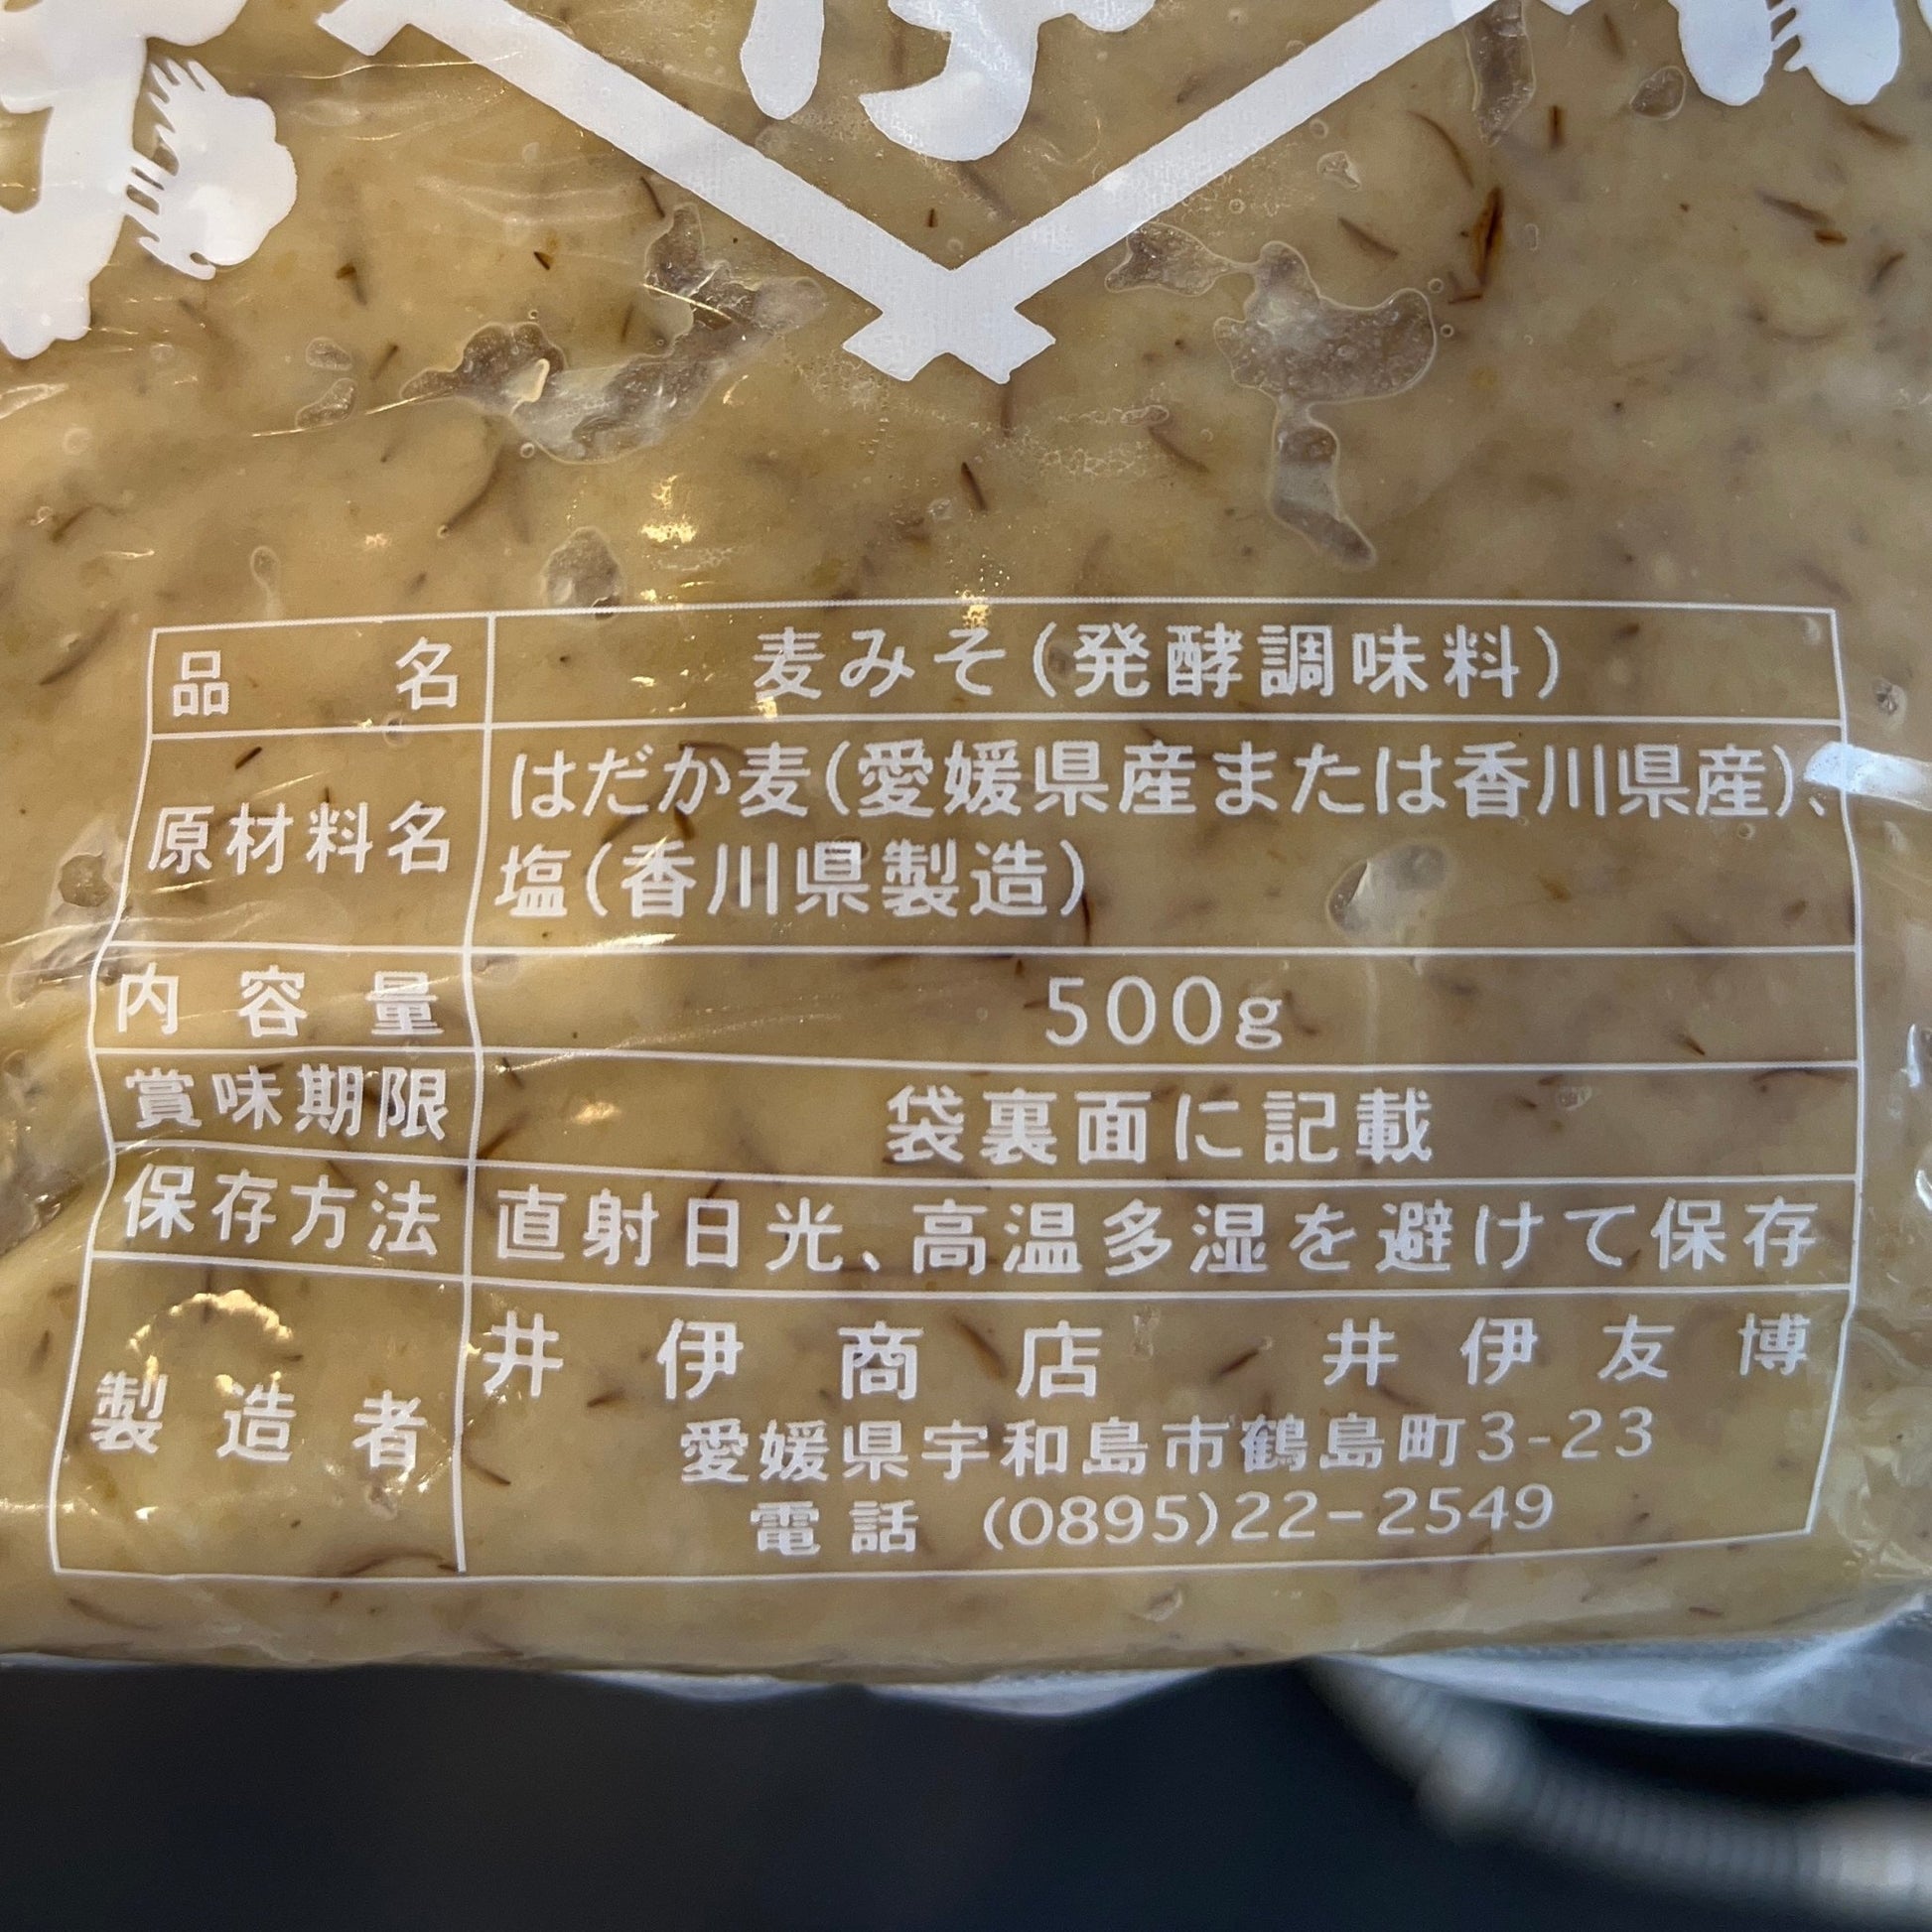 井伊商店の麦みそ 500g - 発酵デパートメント